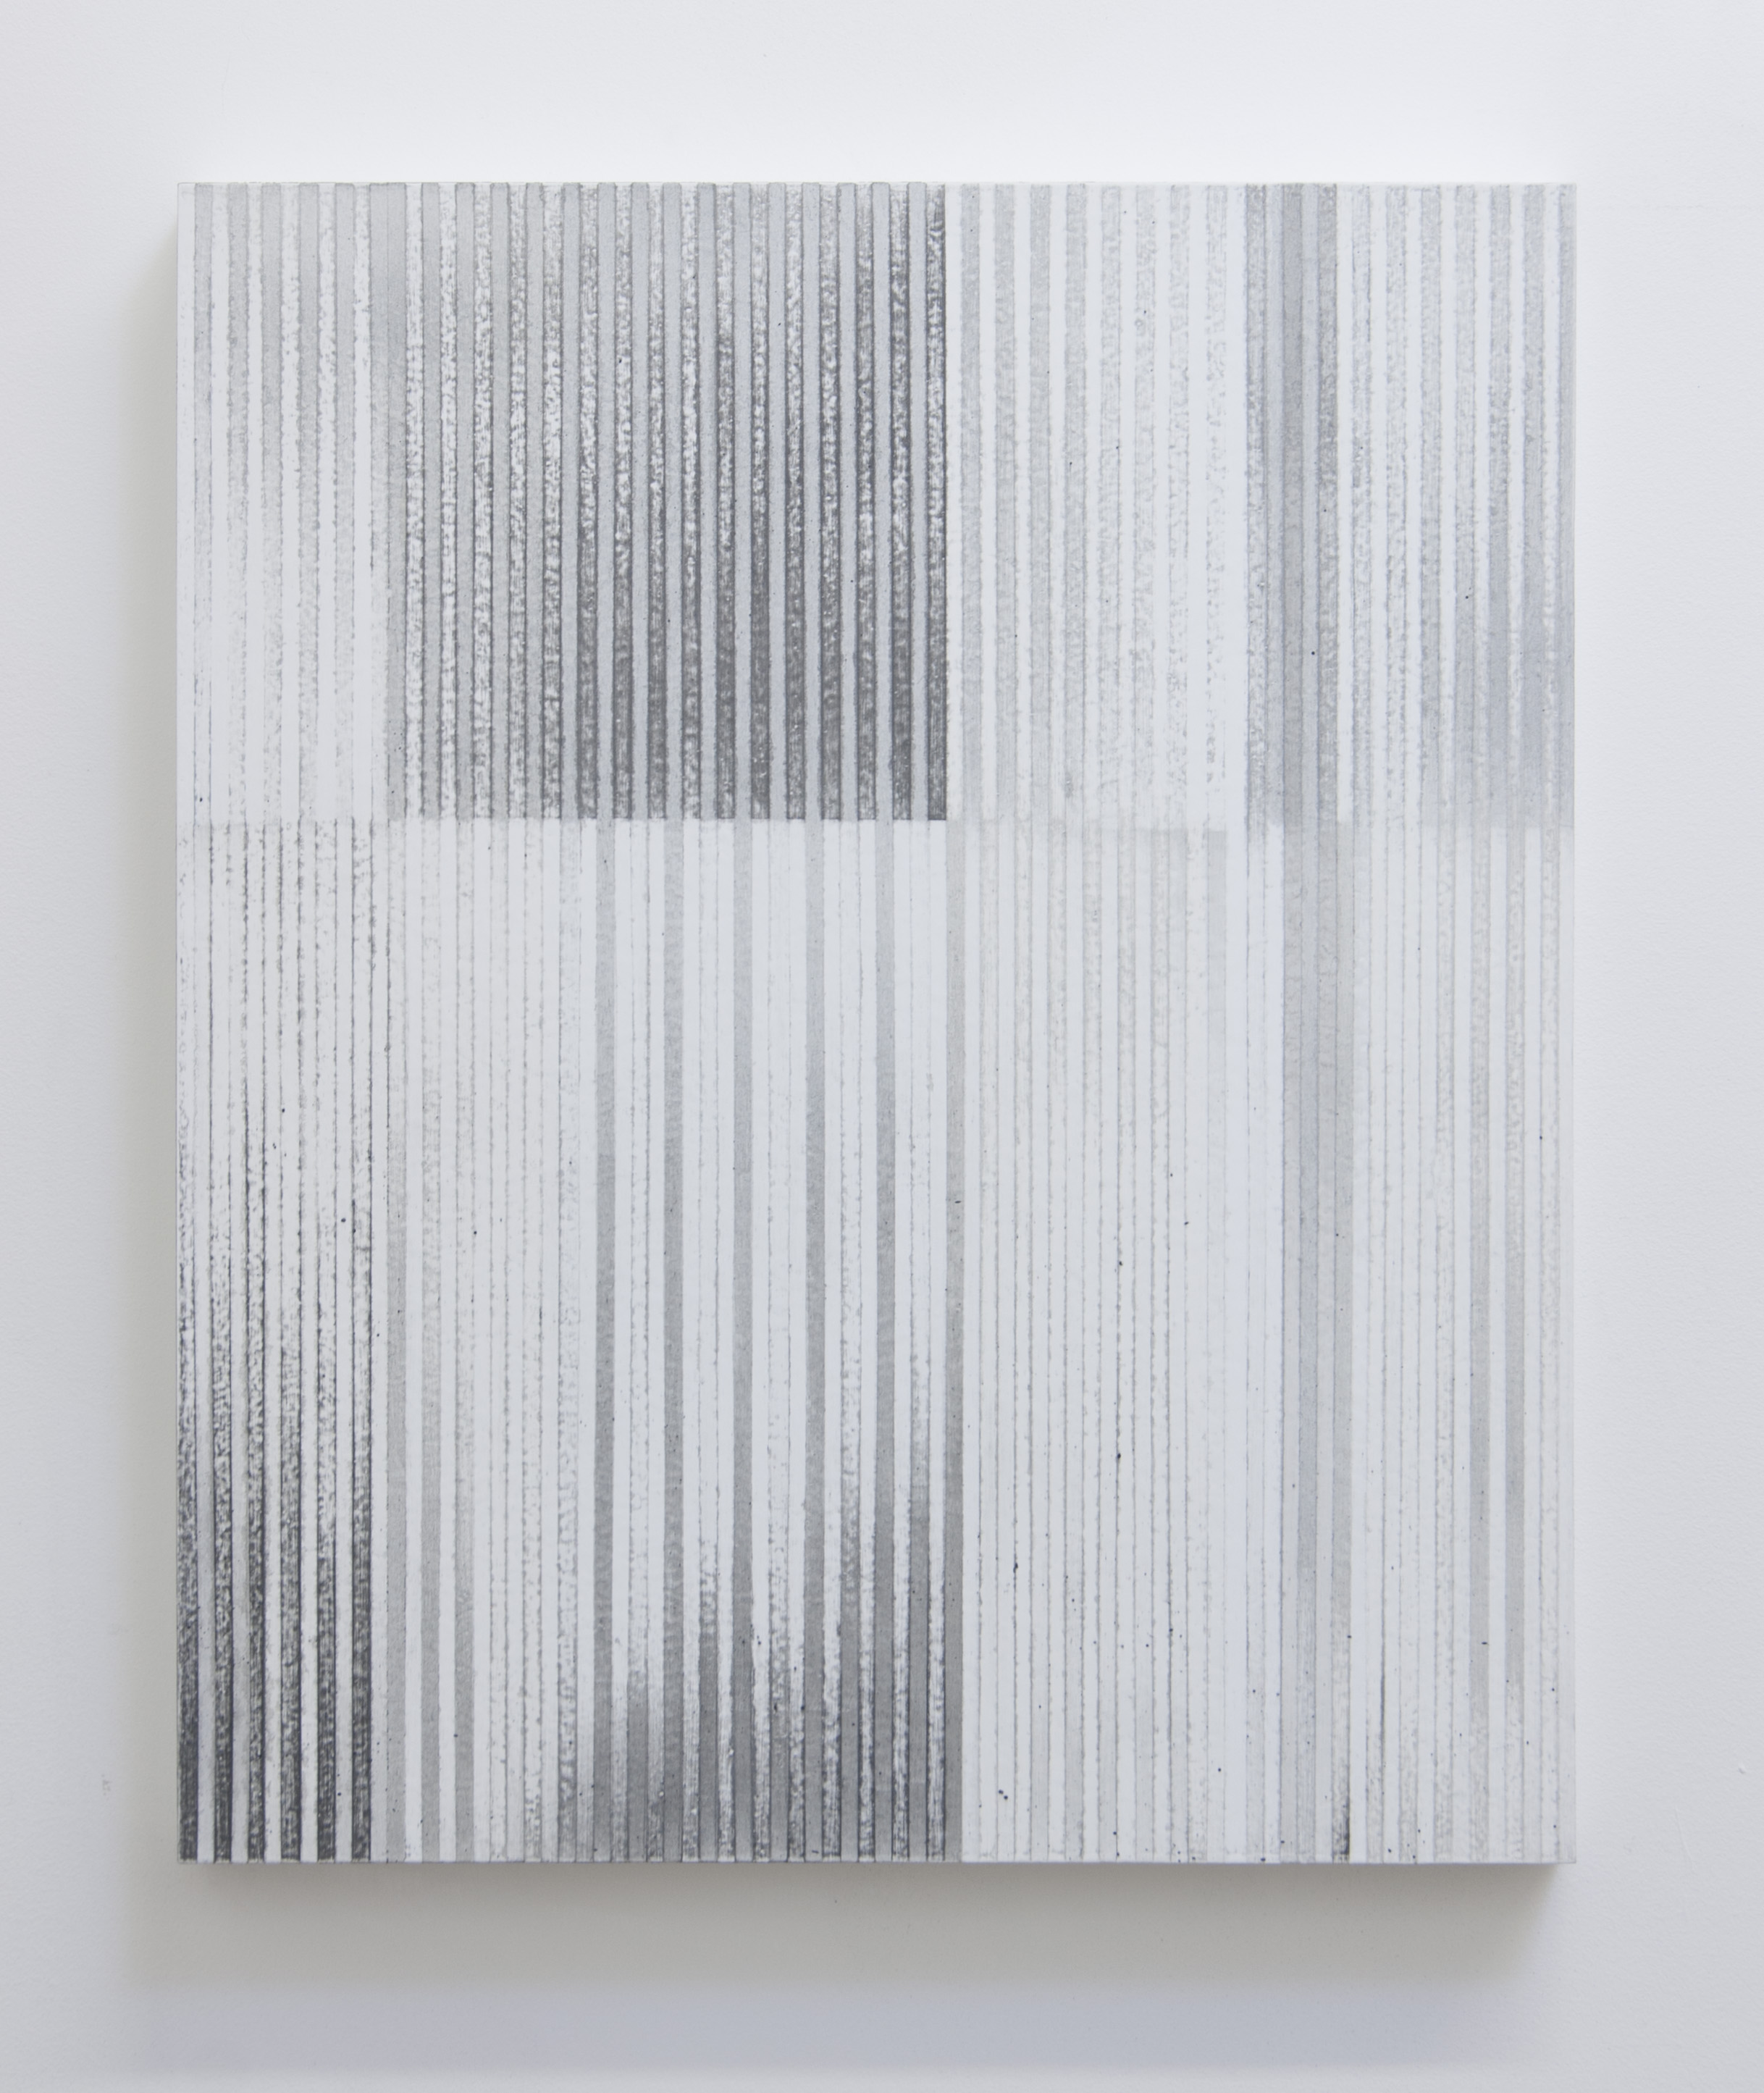  Bloodless Language III, 2014  Acrylic on panel, 24 x 20 inches 